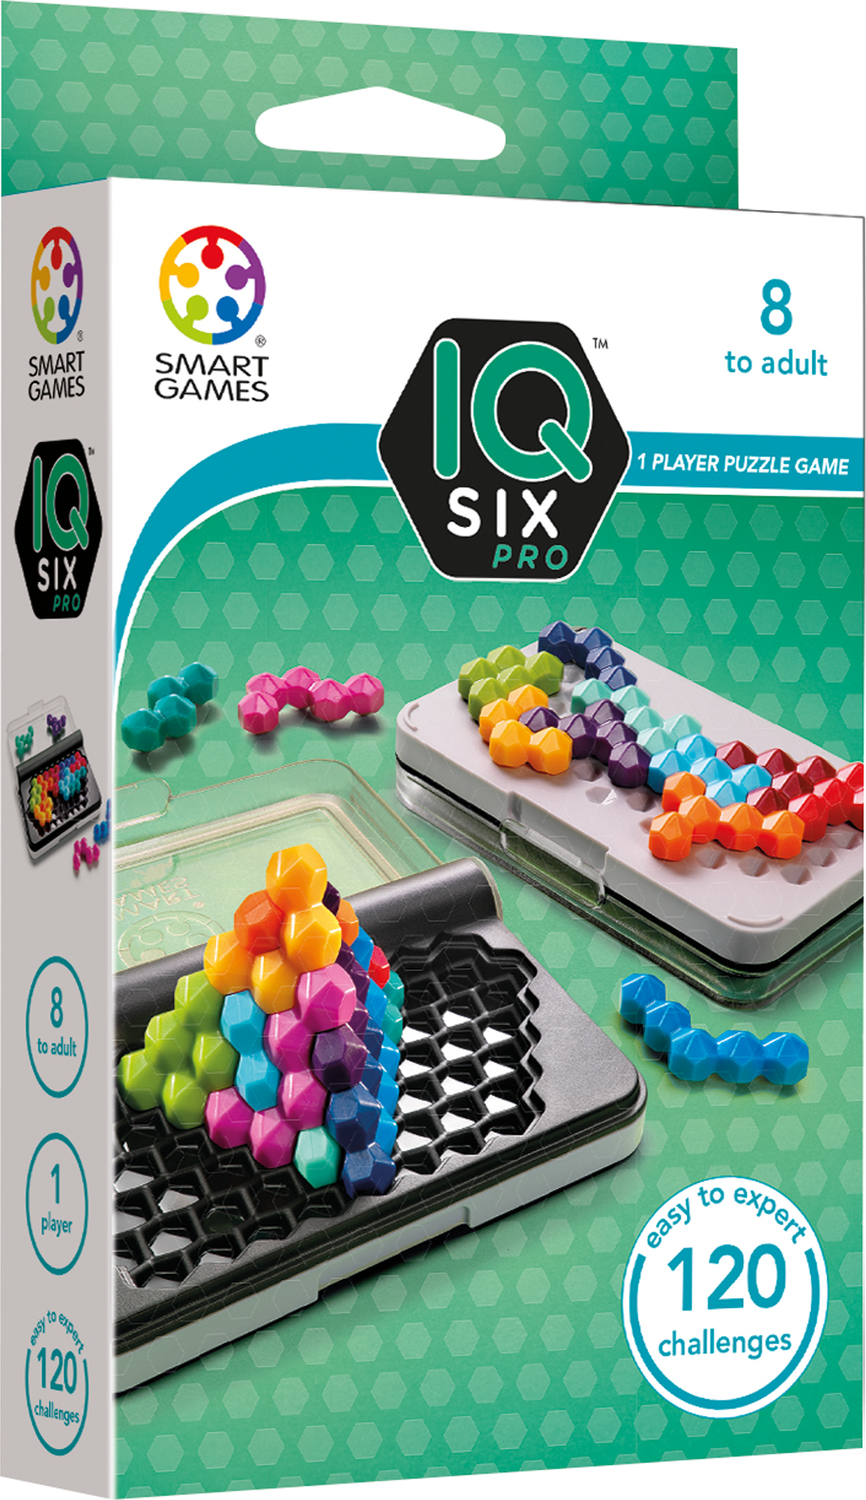 Smart Games IQ - IQ Puzzler Pro